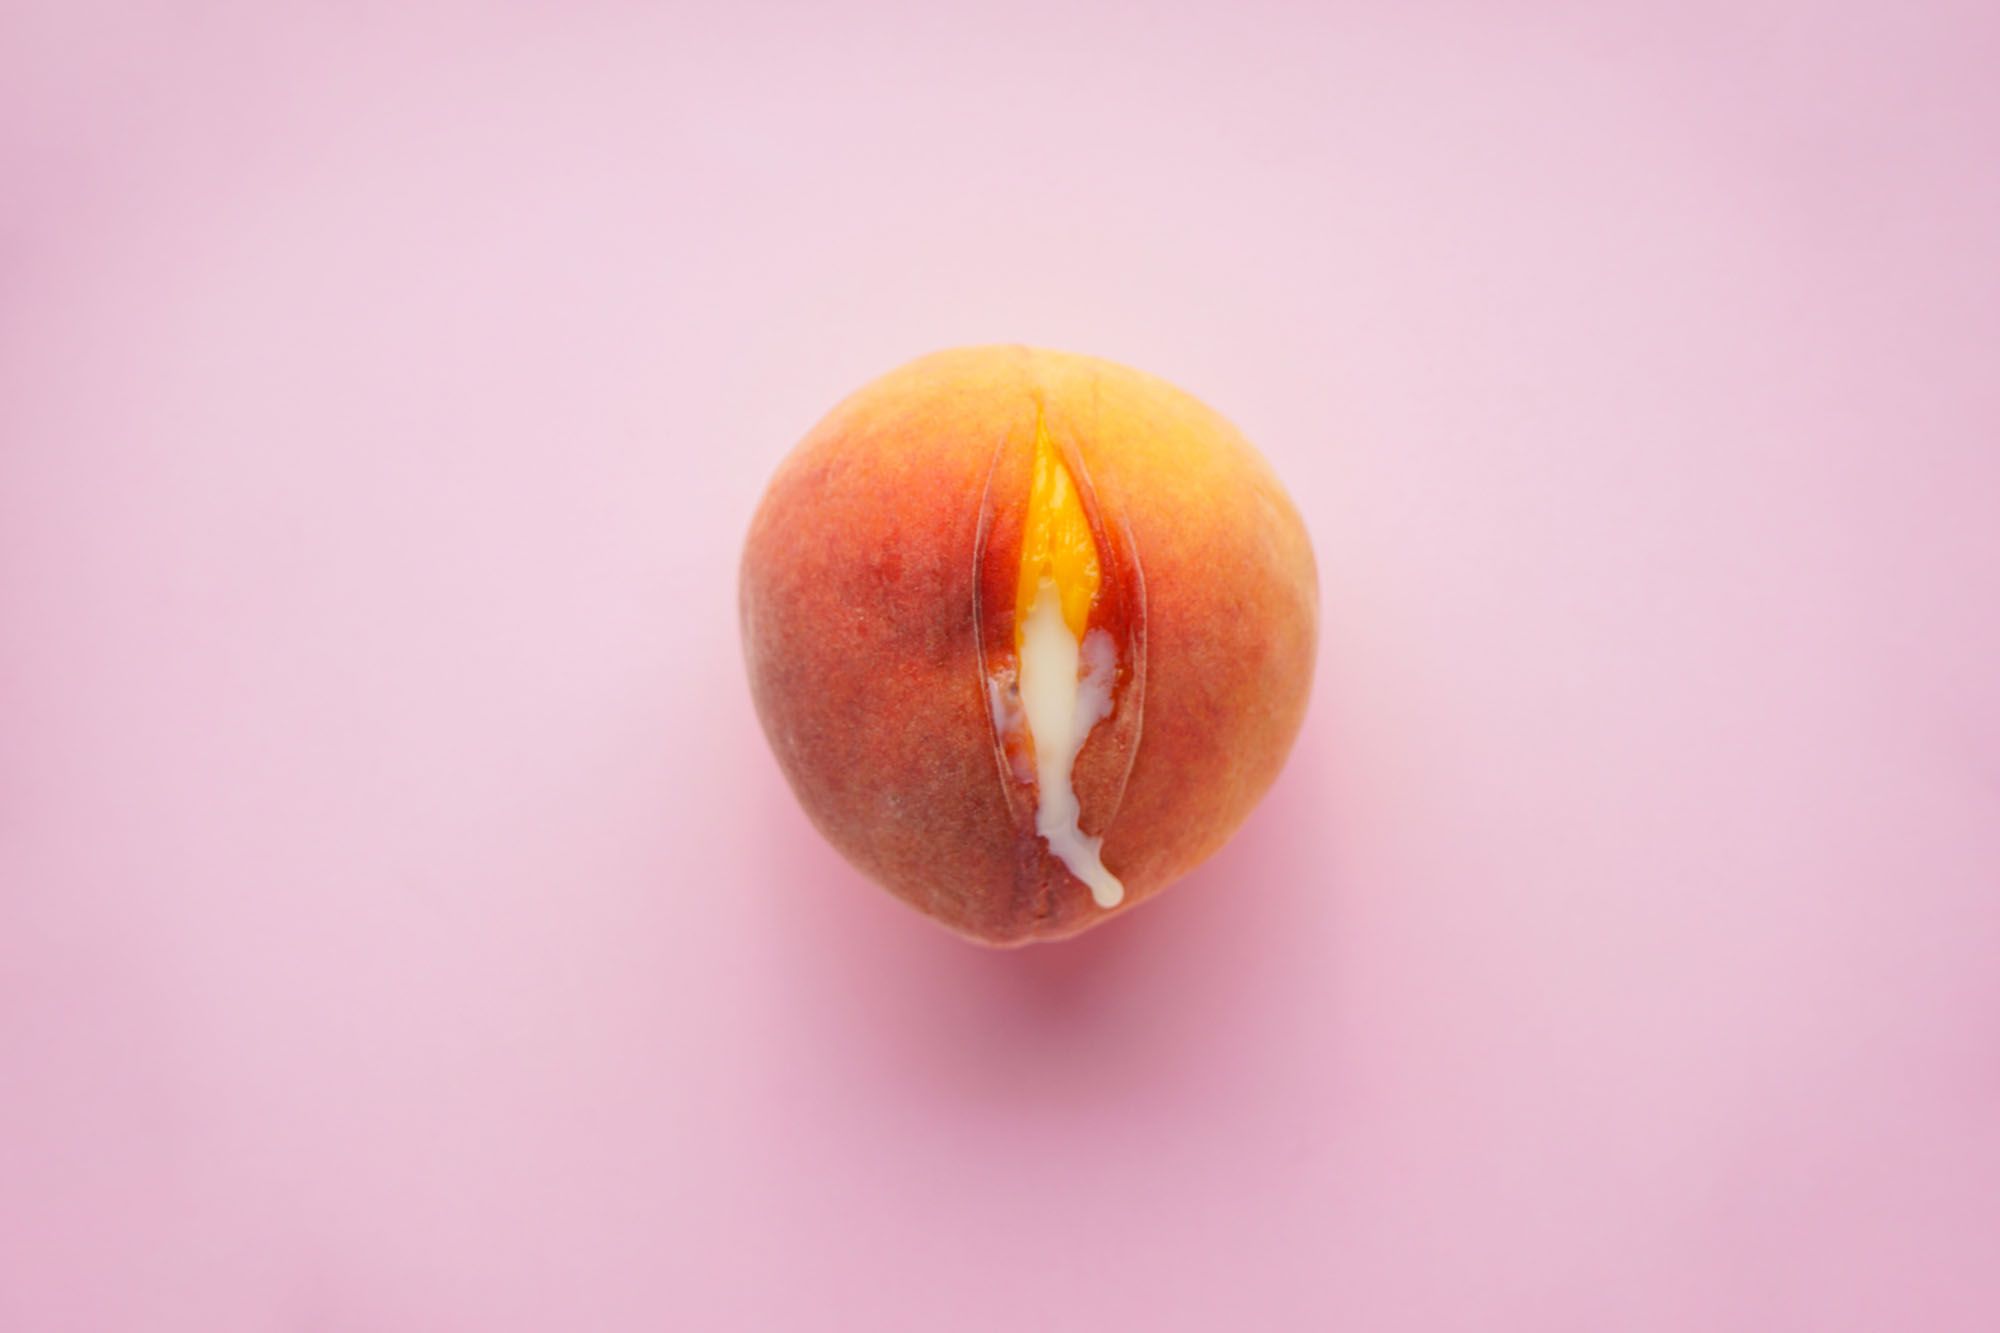 Ein Pfirsich vor rosanem Hintegrund aus dem eine weiße Flüssigkeit rausläuft